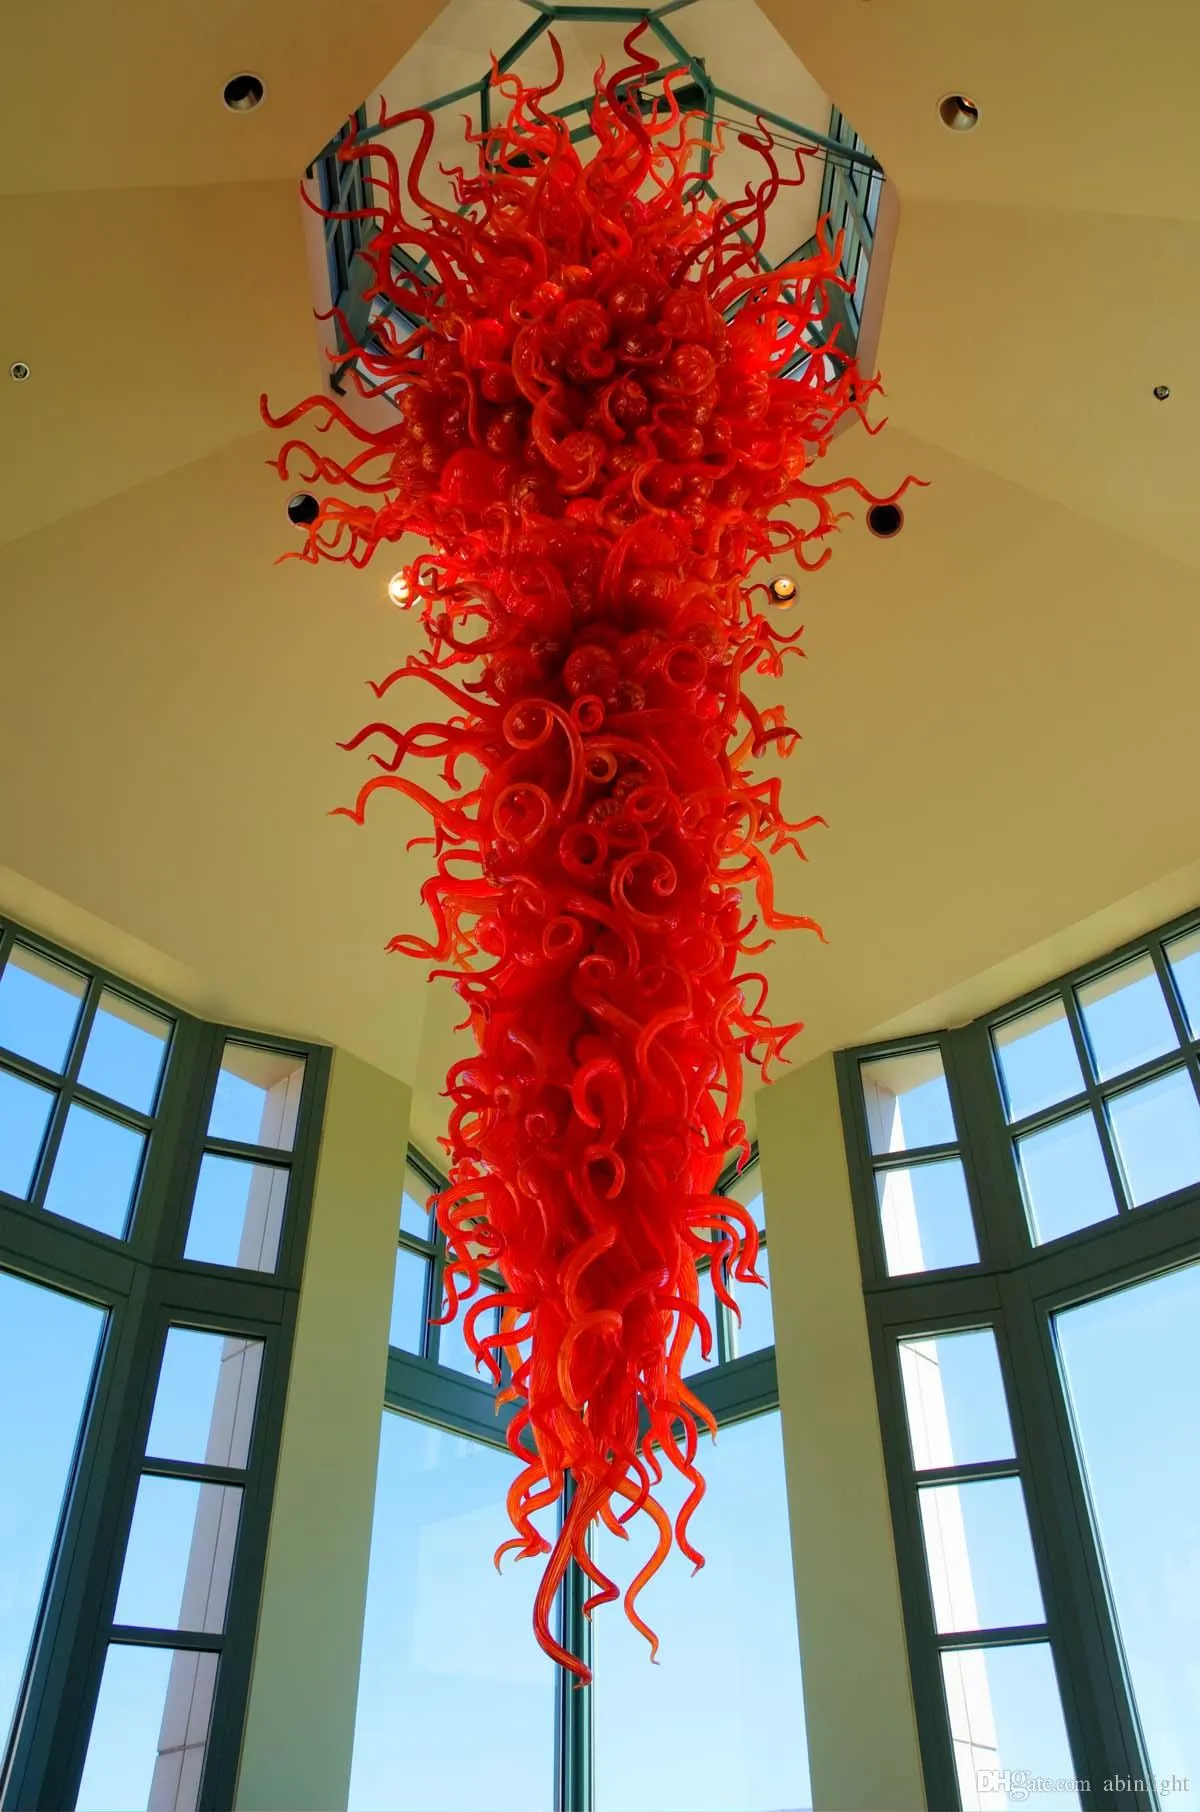 大きな赤い吹きガラスのシャンデリアフォーリーホームモールホテルロビーデコレーションアートガラスLED電球シャンデリアペンダントランプラグジュアリー